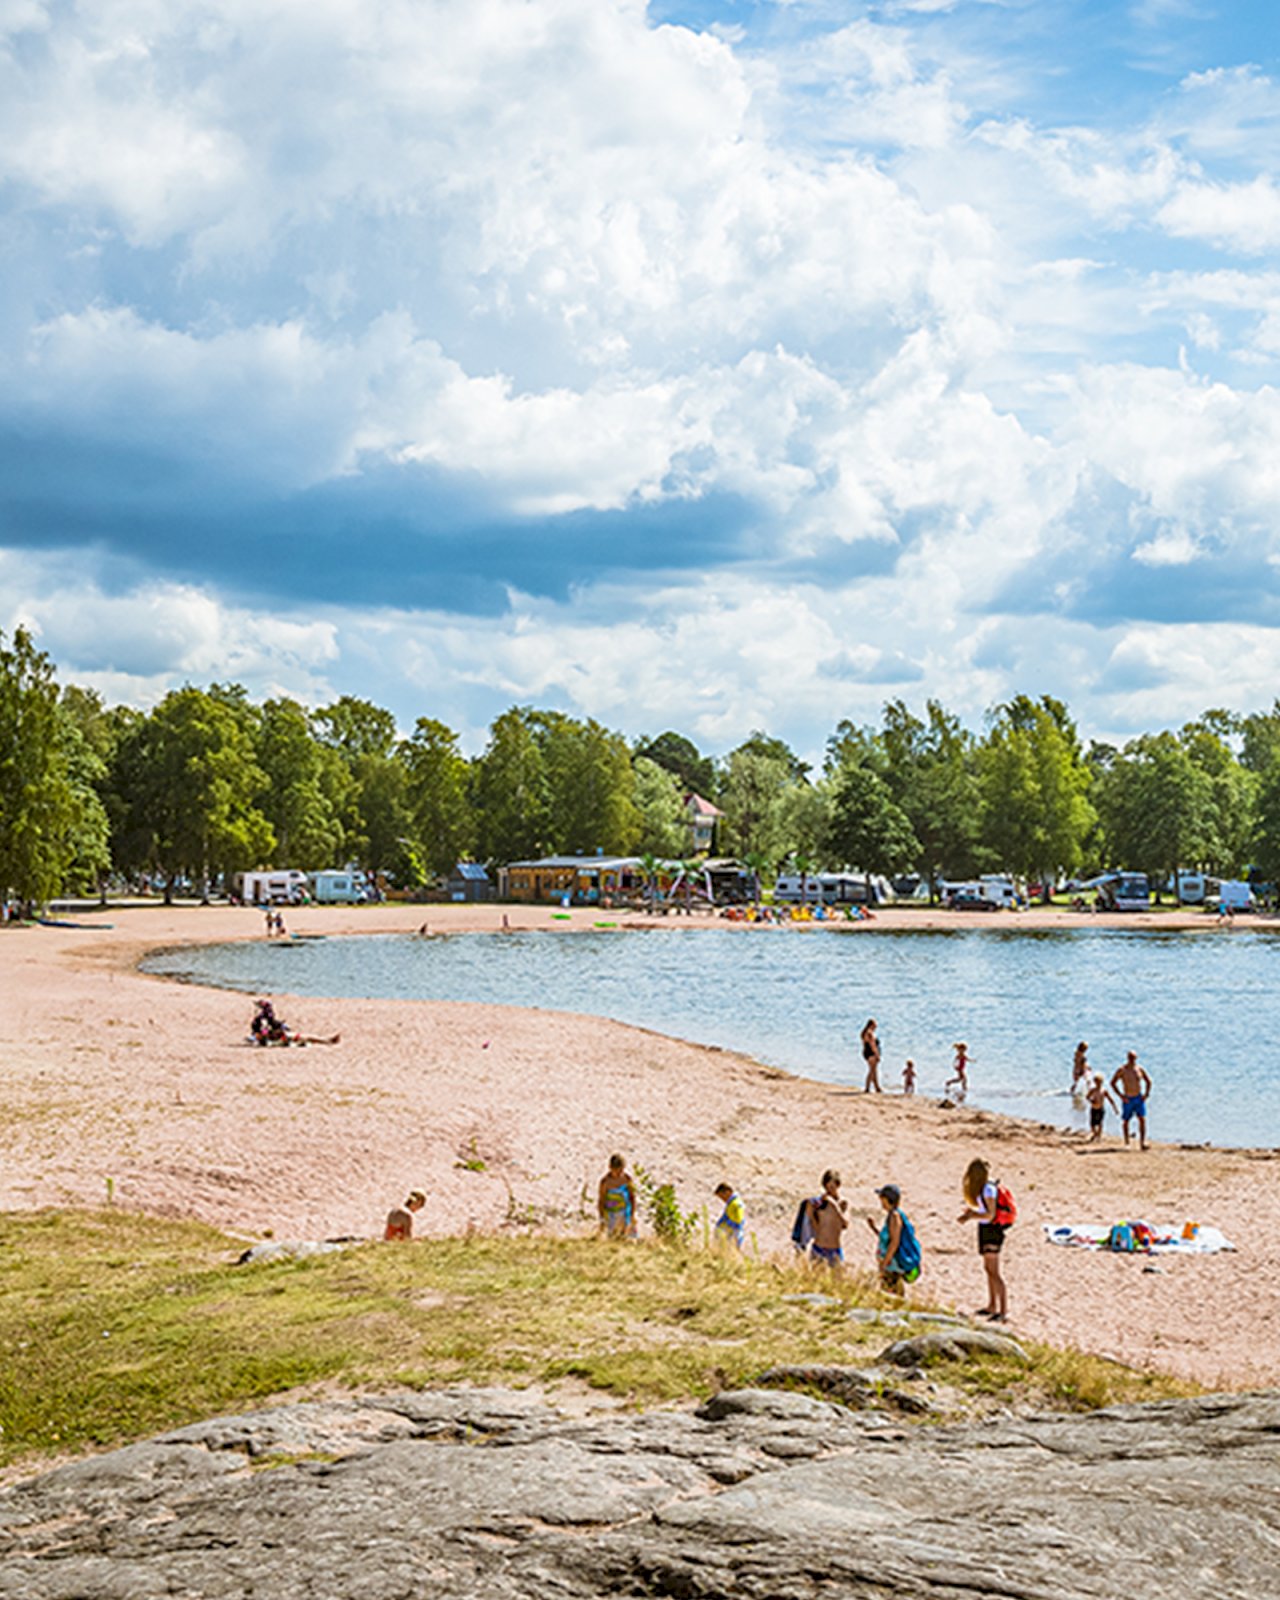 Lapsiperheitä nauttimassa kesäpäivästä Rauman uimarannalla.